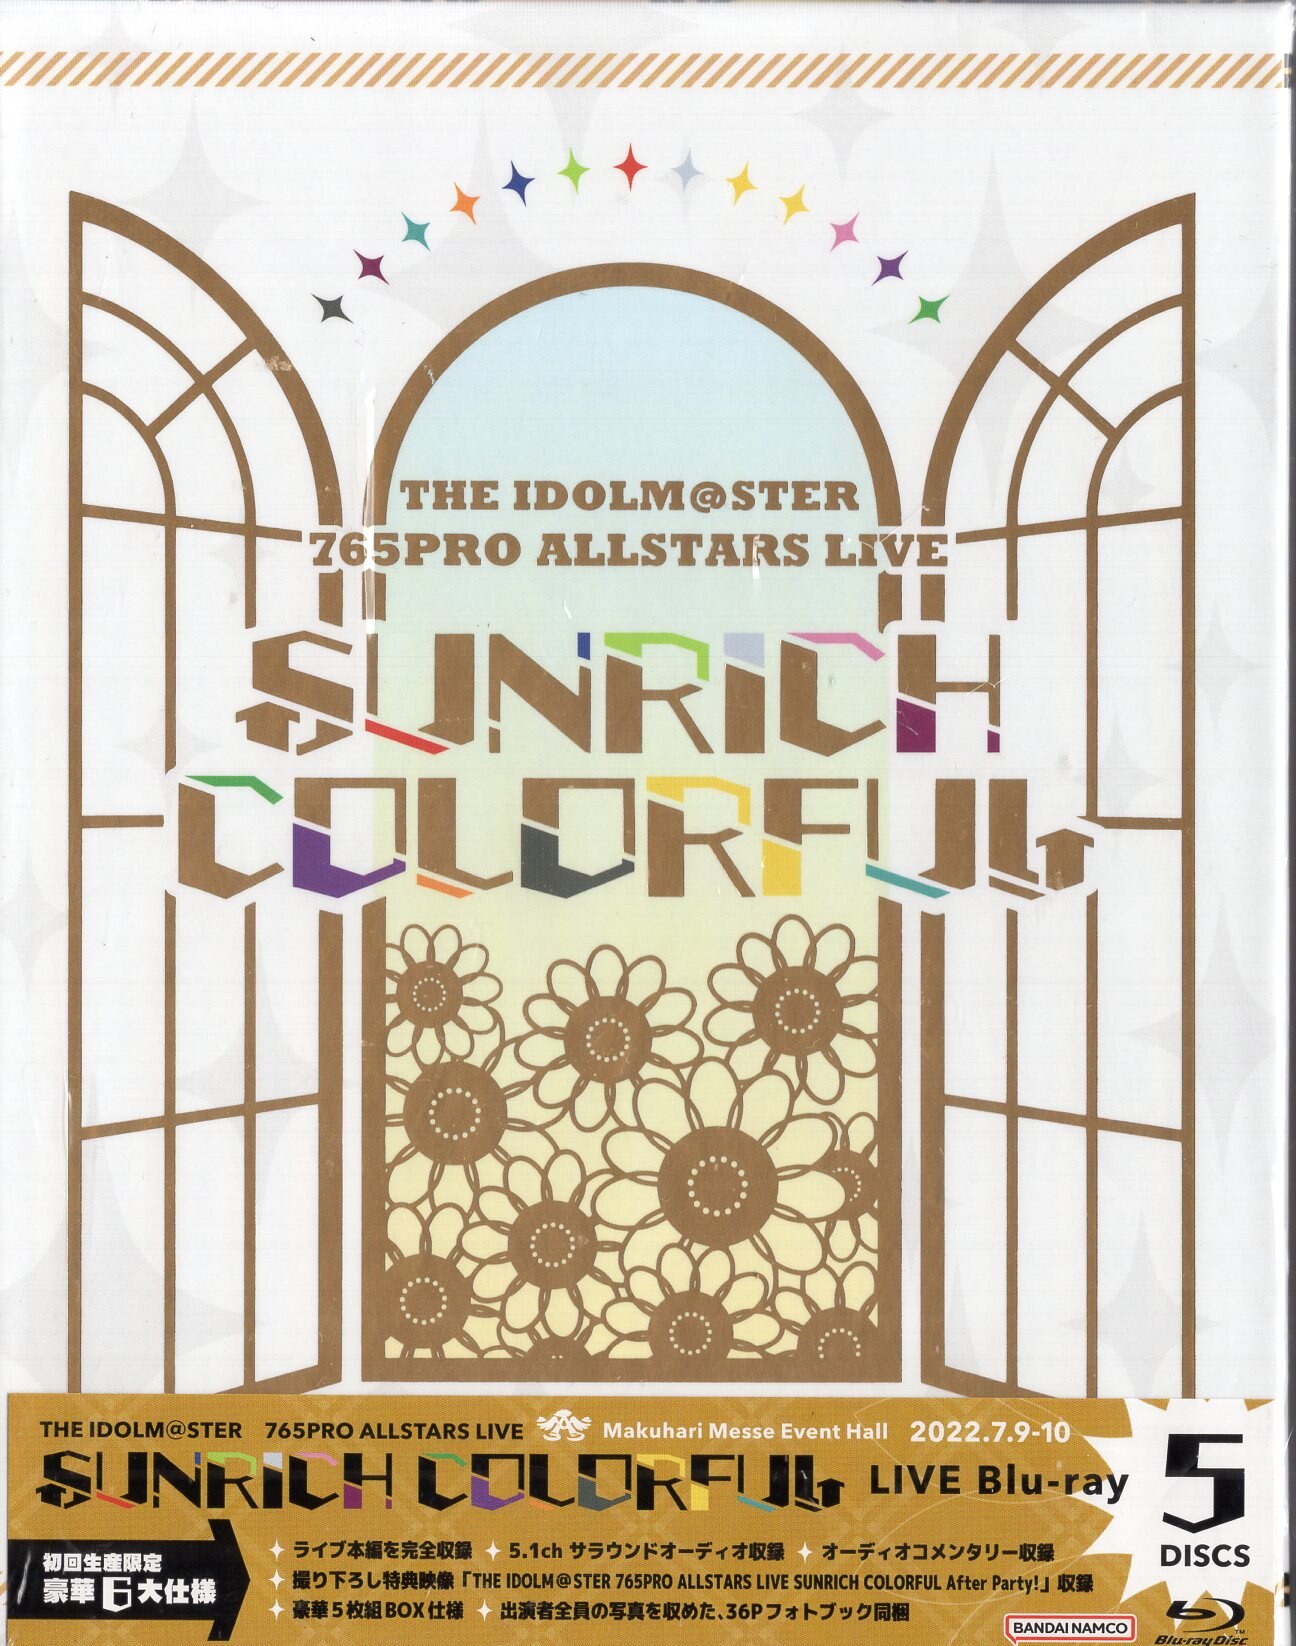 ライブ/イベントBlu-ray 初回生産限定版)SUNRICH COLORFUL LIVE Blu